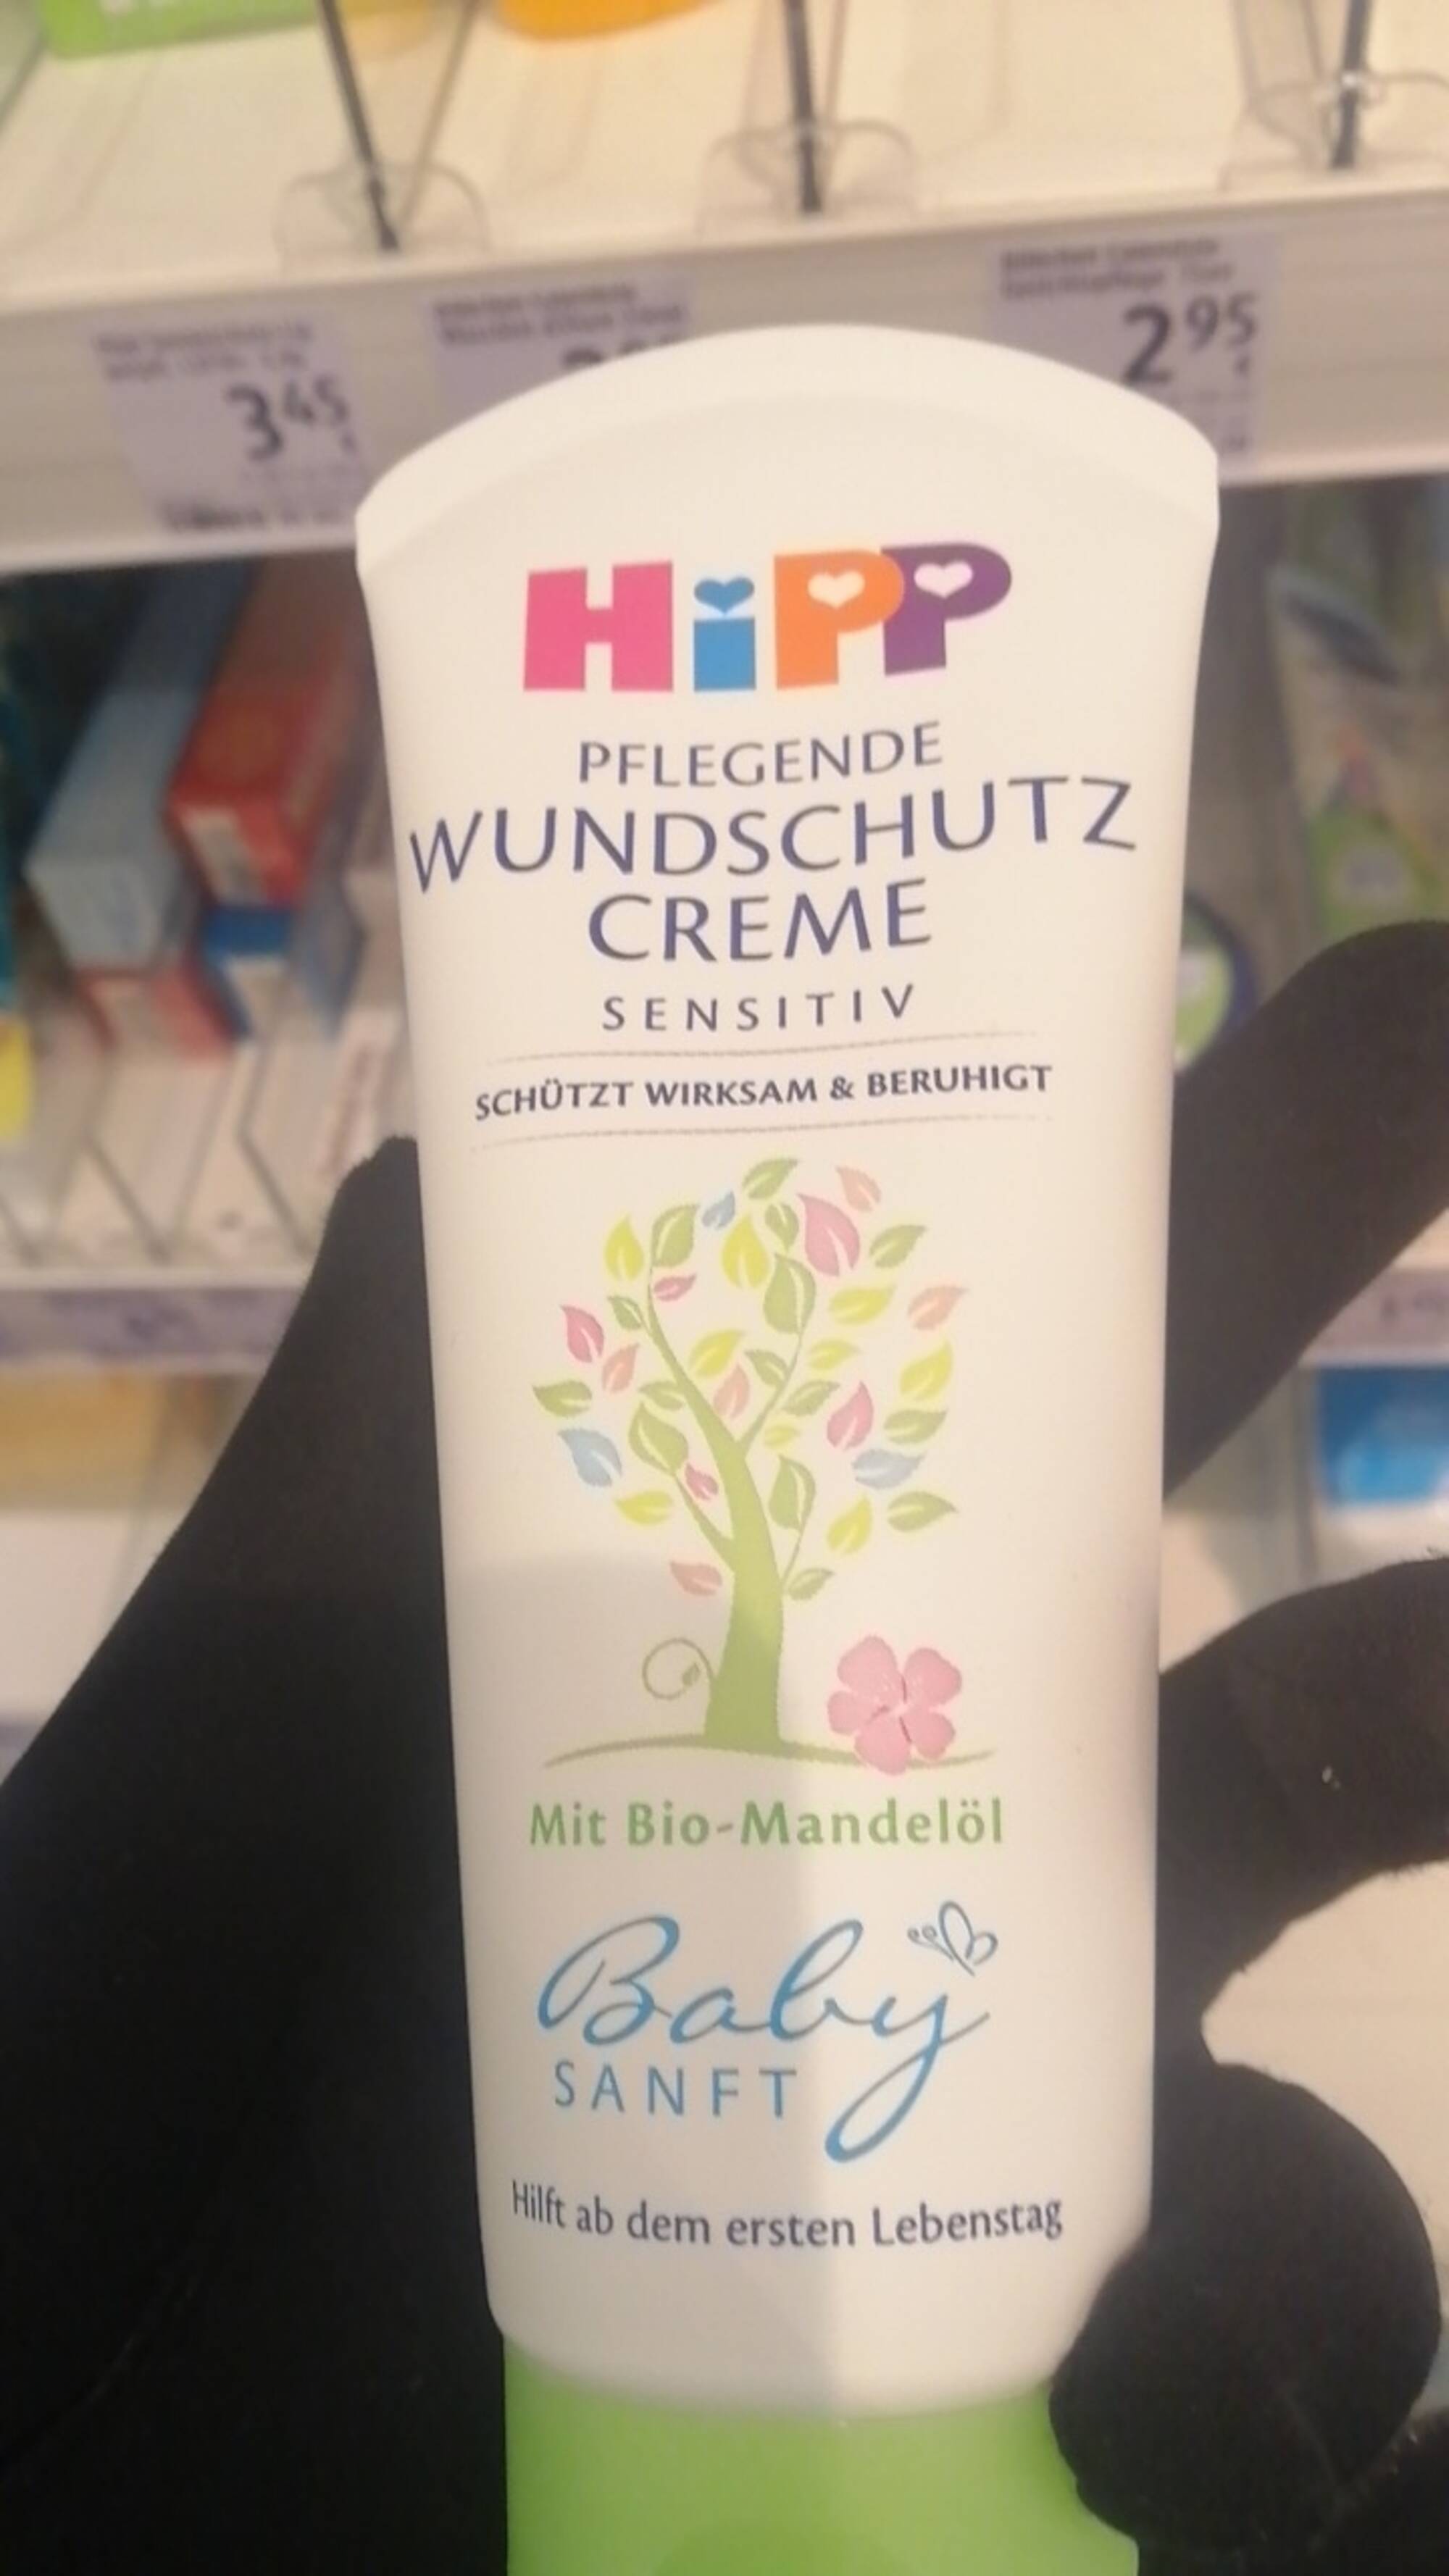 HIPP - Baby sanft - Pflegende wundschutz creme